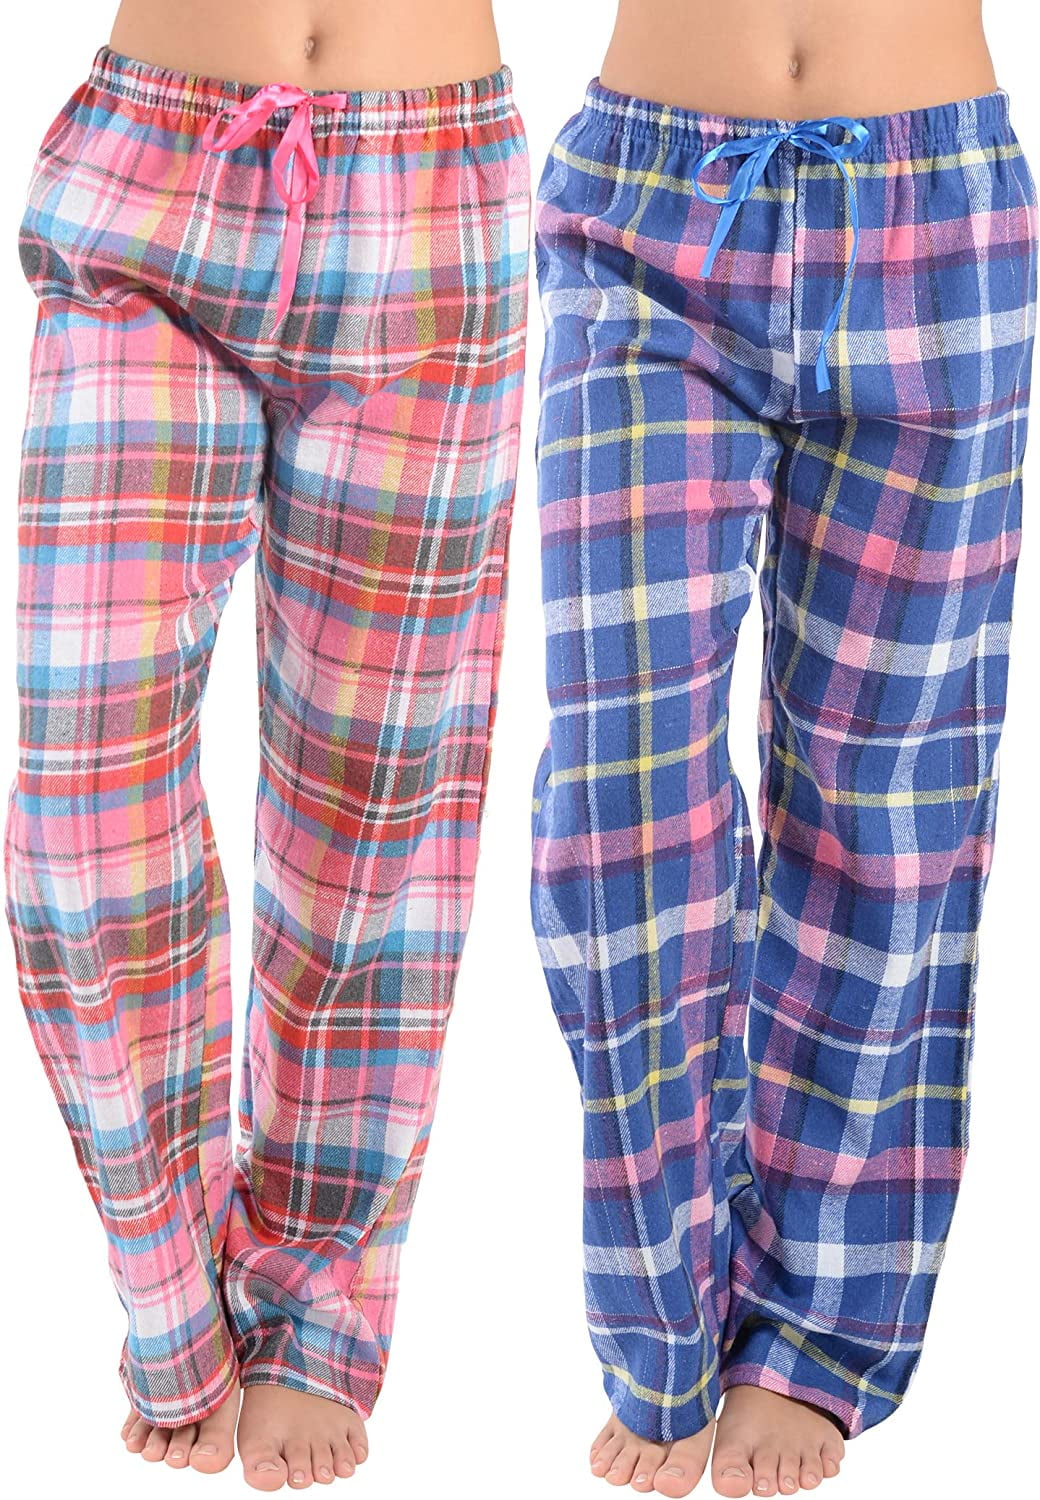 Details about  / Women Flannel Lounge Pants-2 Pack-Plaid Pajama Pants Cotton Blend Pajama Bottoms